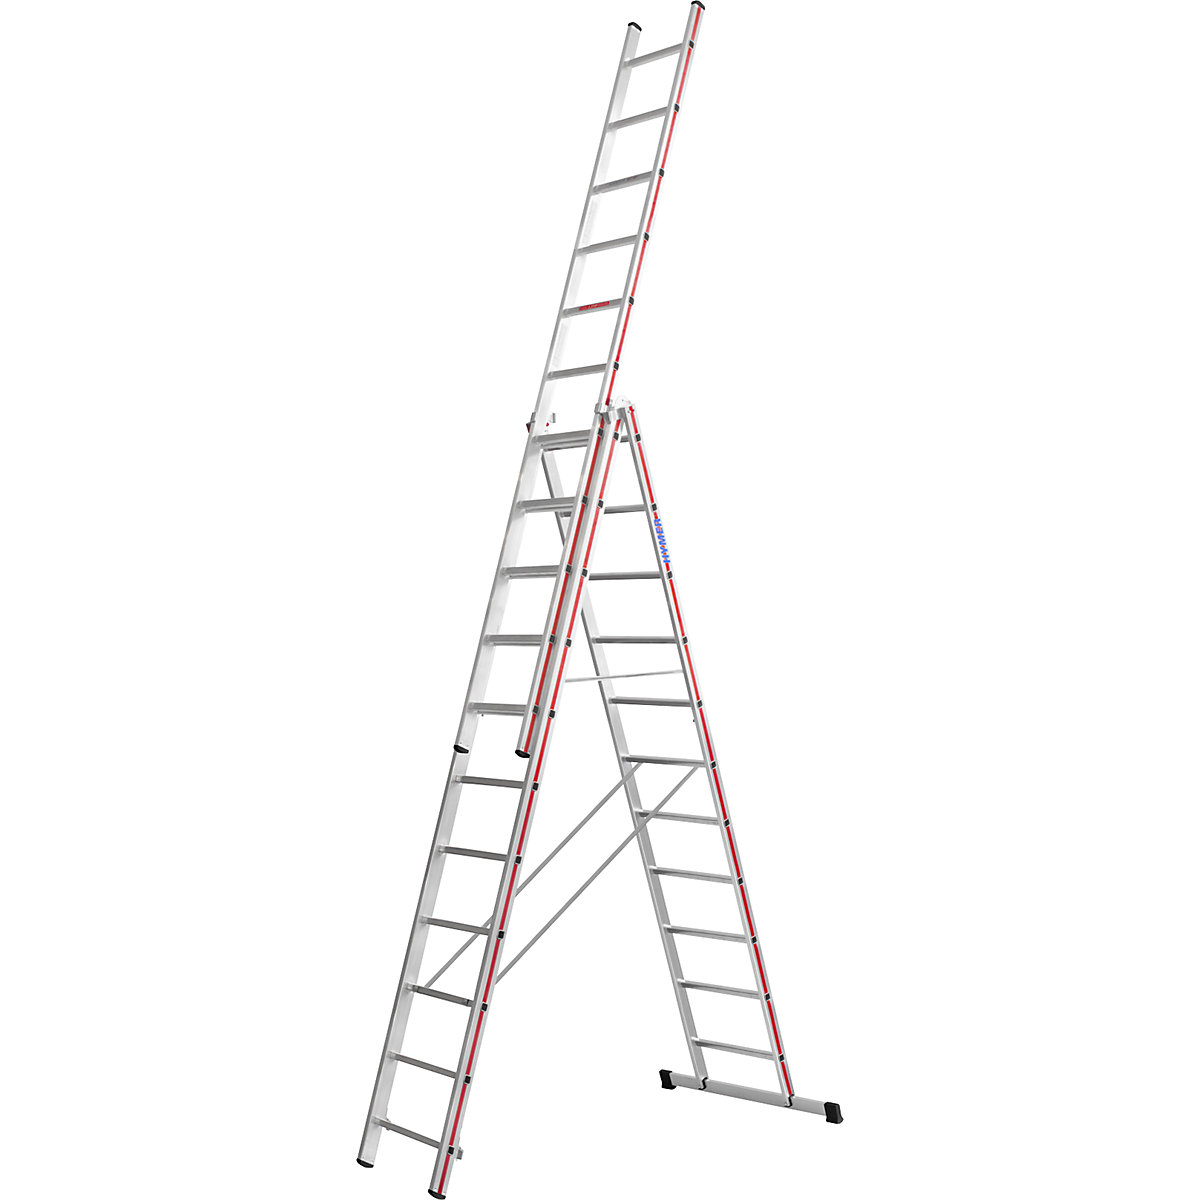 Aluminijasta večnamenska lestev – HYMER, profesionalna izvedba, 3 x 11 klinov, maks. delovna višina 8,49 m-9